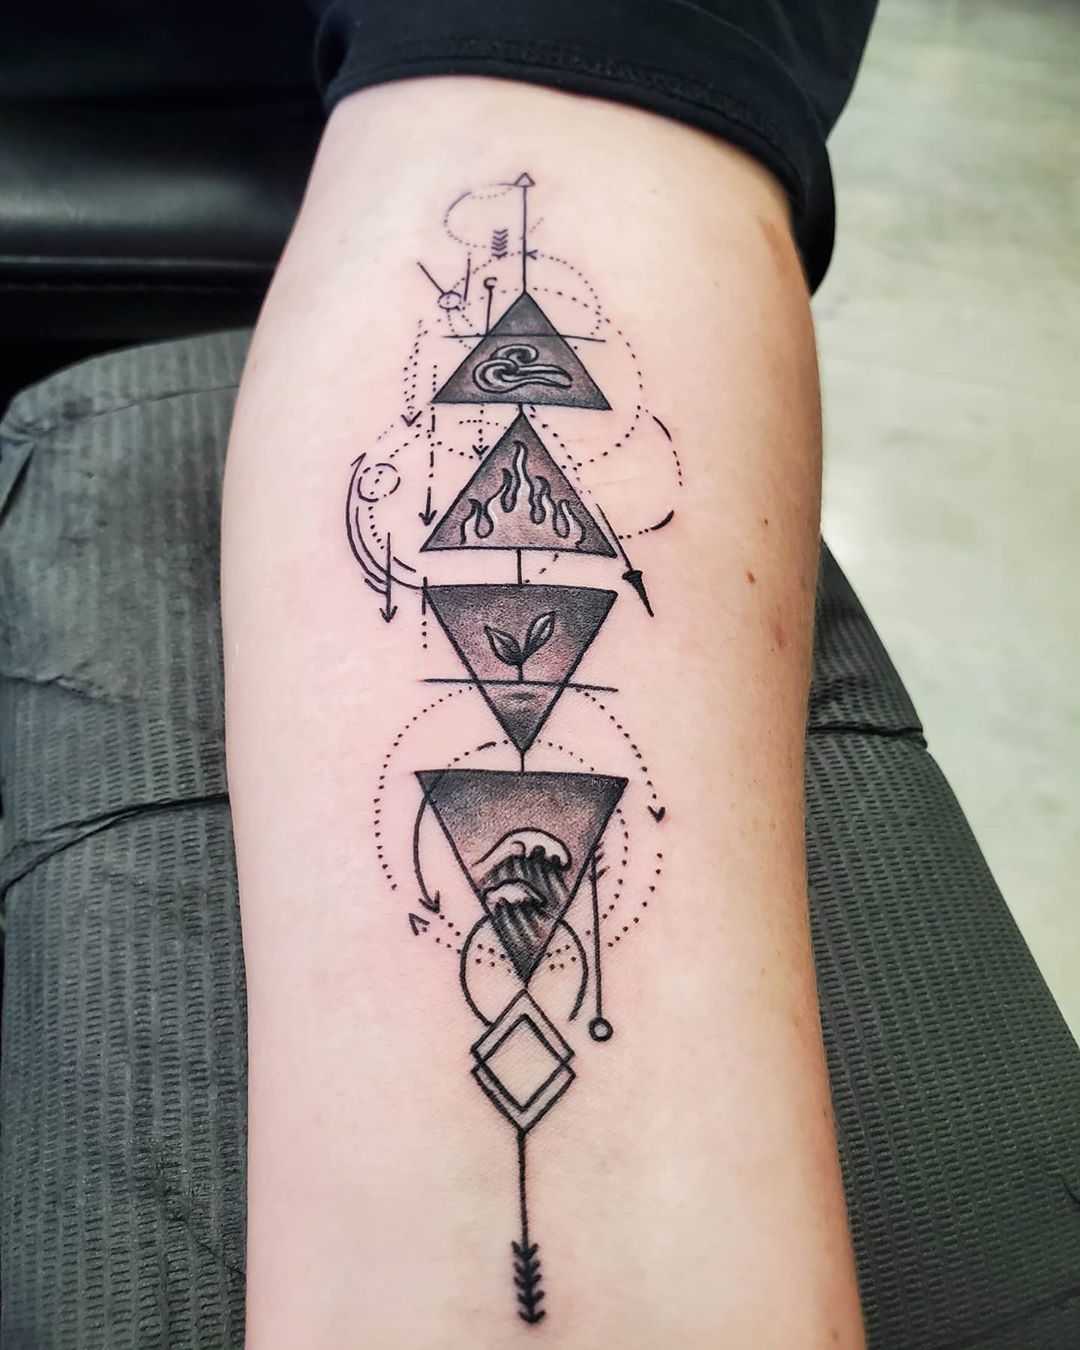 ≫ 116 Triangle Tattoos With Original Designs